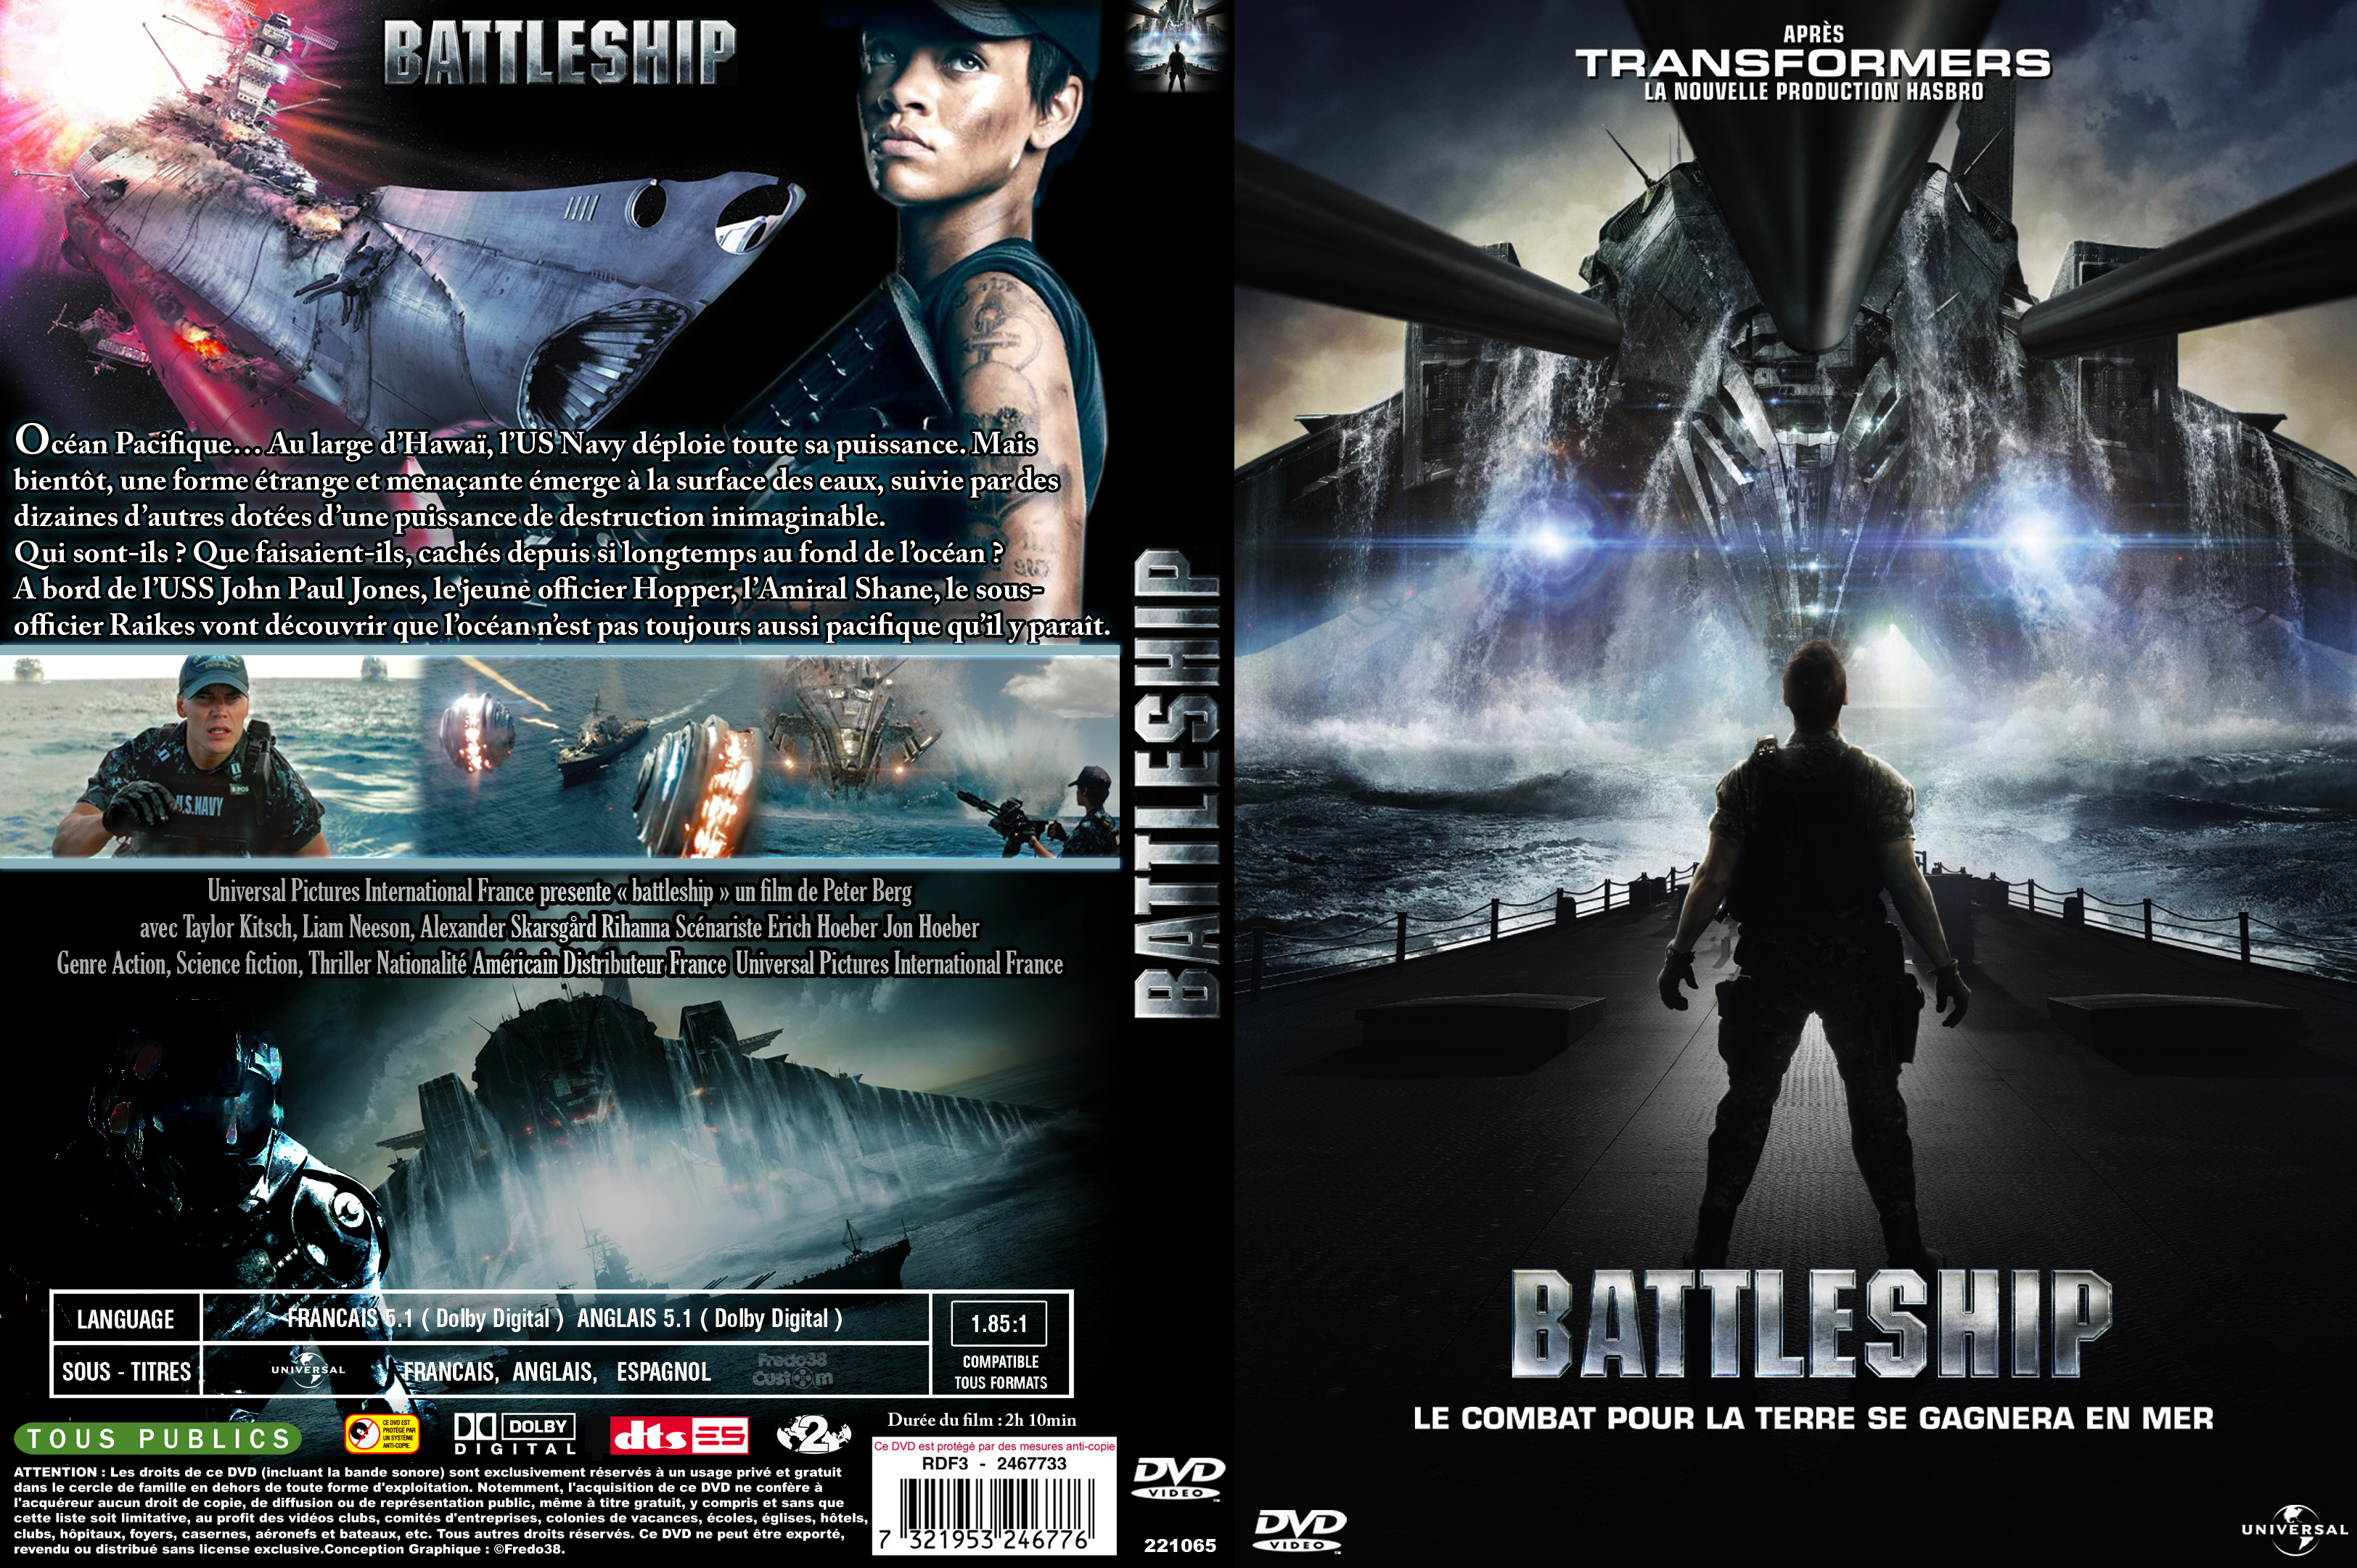 Jaquette DVD Battleship custom